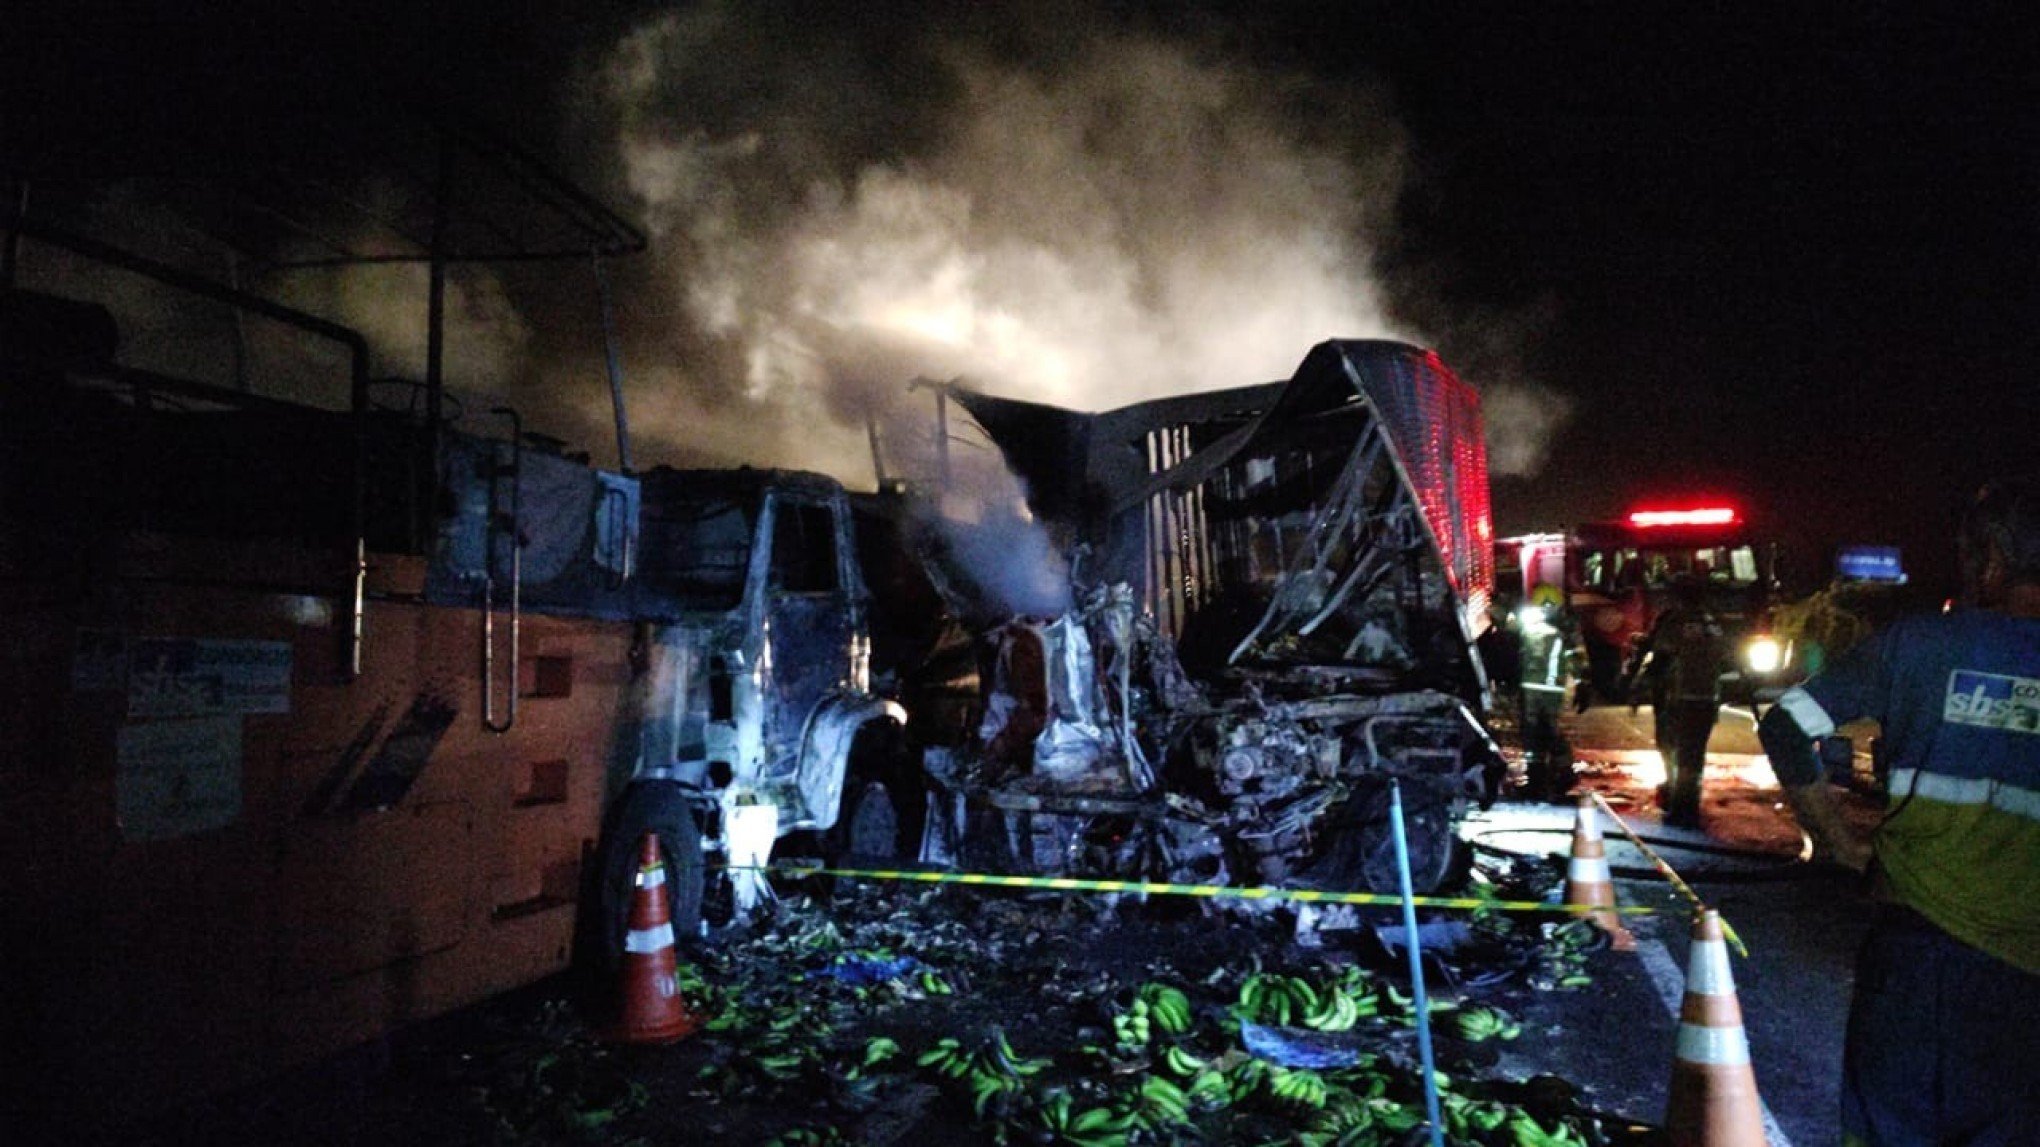 ACIDENTE COM MORTE: Motorista de caminhão que transportava bananas morre após incêndio e colisão na BR-290